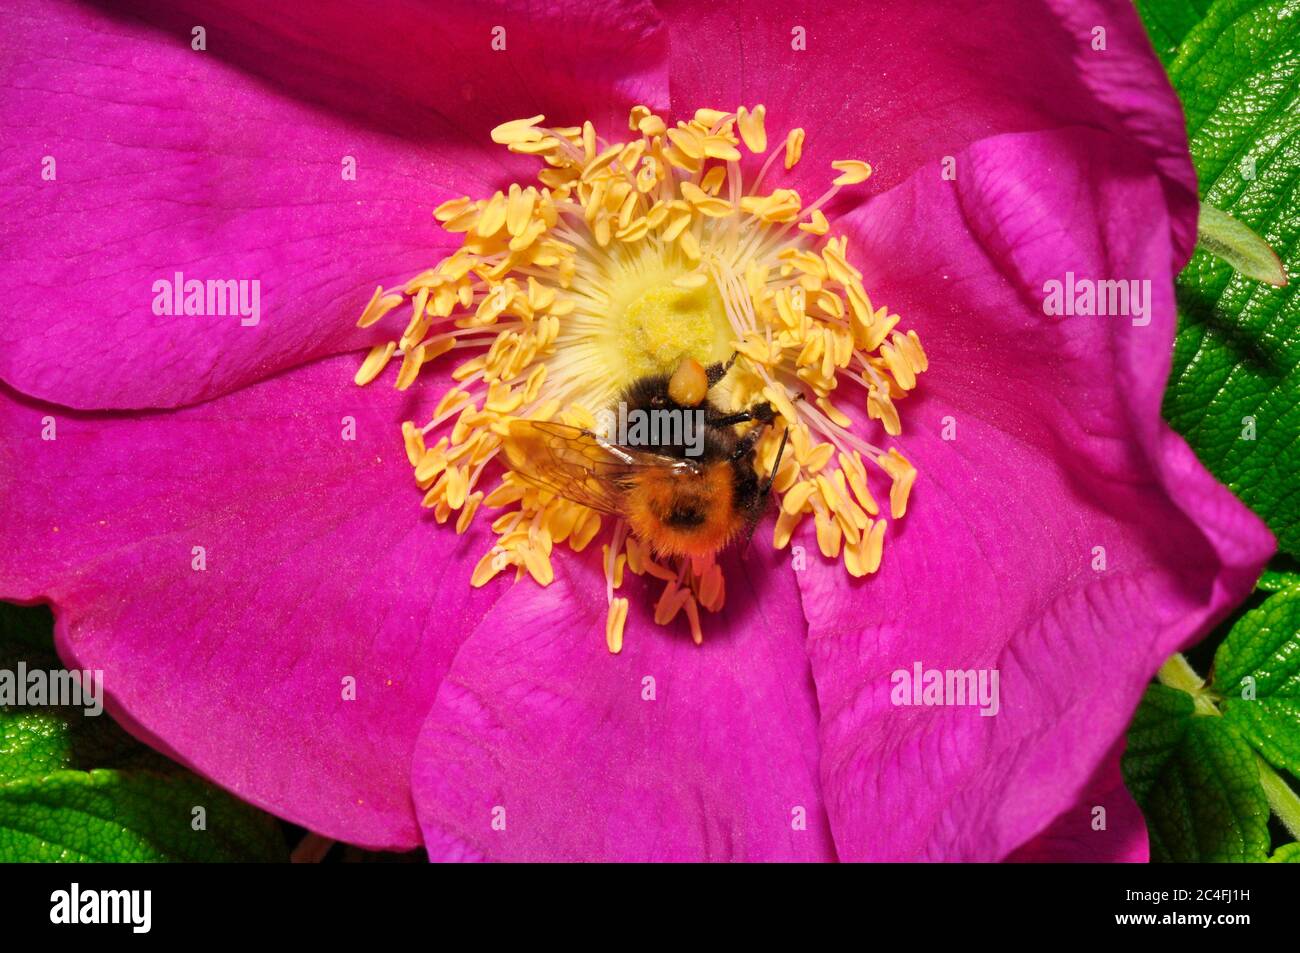 Arbre Bumblebee,' Bombus hypnorum', répandu après son arrivée au Royaume-Uni en 2001.collecte de pollen d'une fleur de rosa. Préférence distincte pour la banlieue Banque D'Images